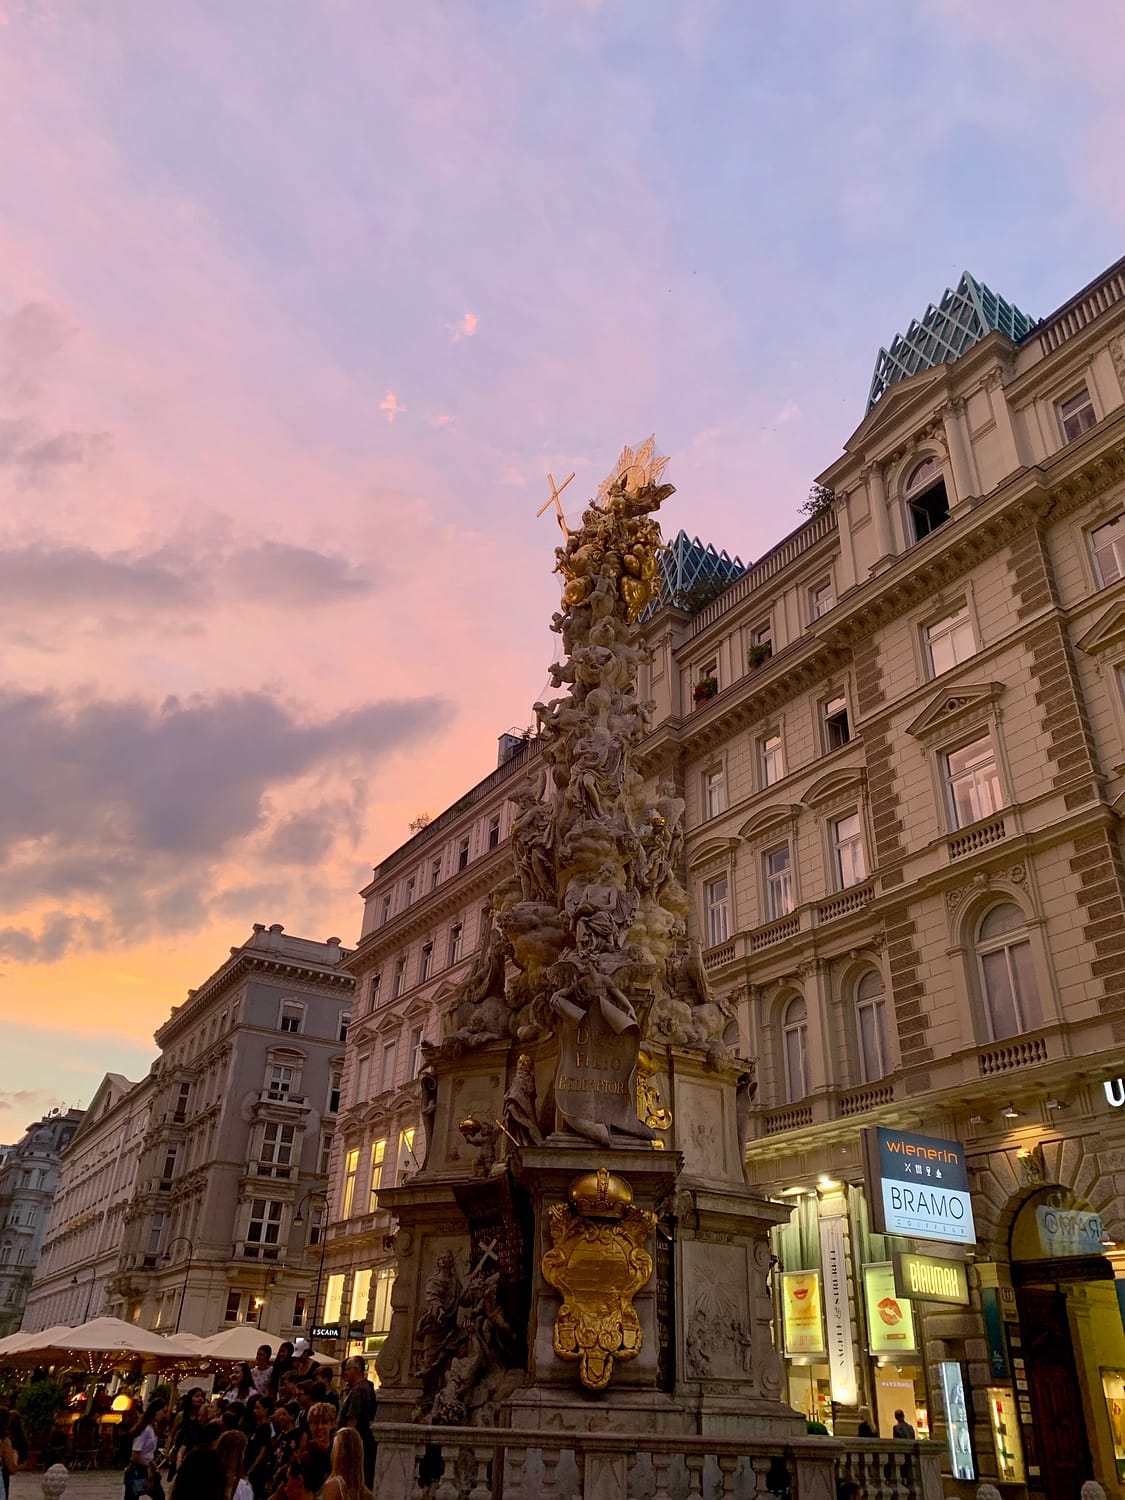 Vienna at sunset.